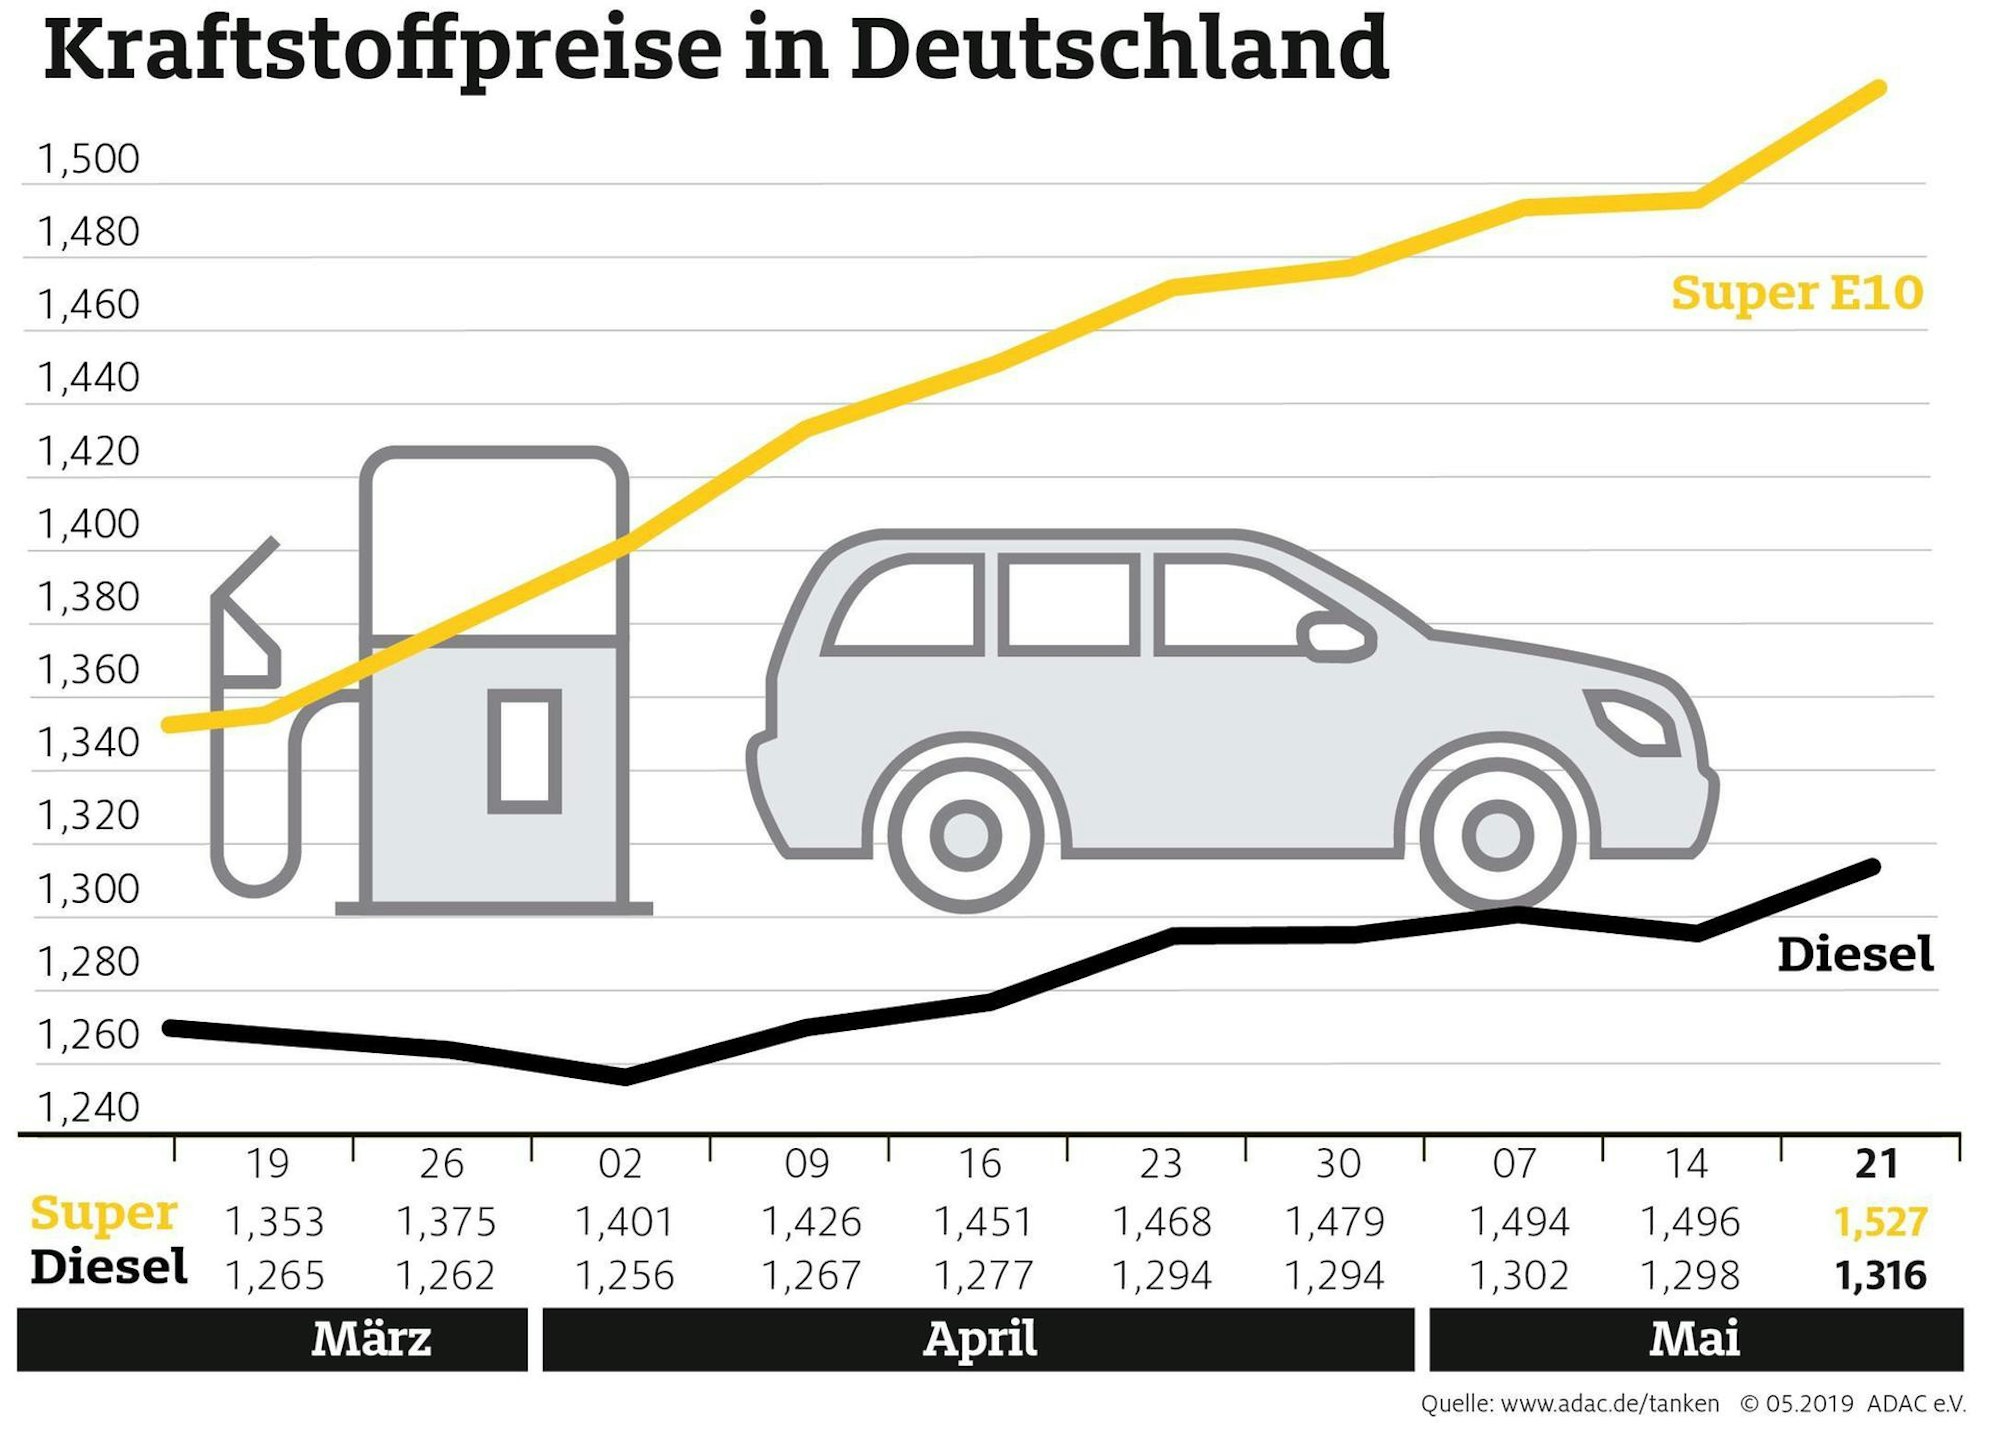 Kraftstoffpreise-in-Deutschland-mai-2019